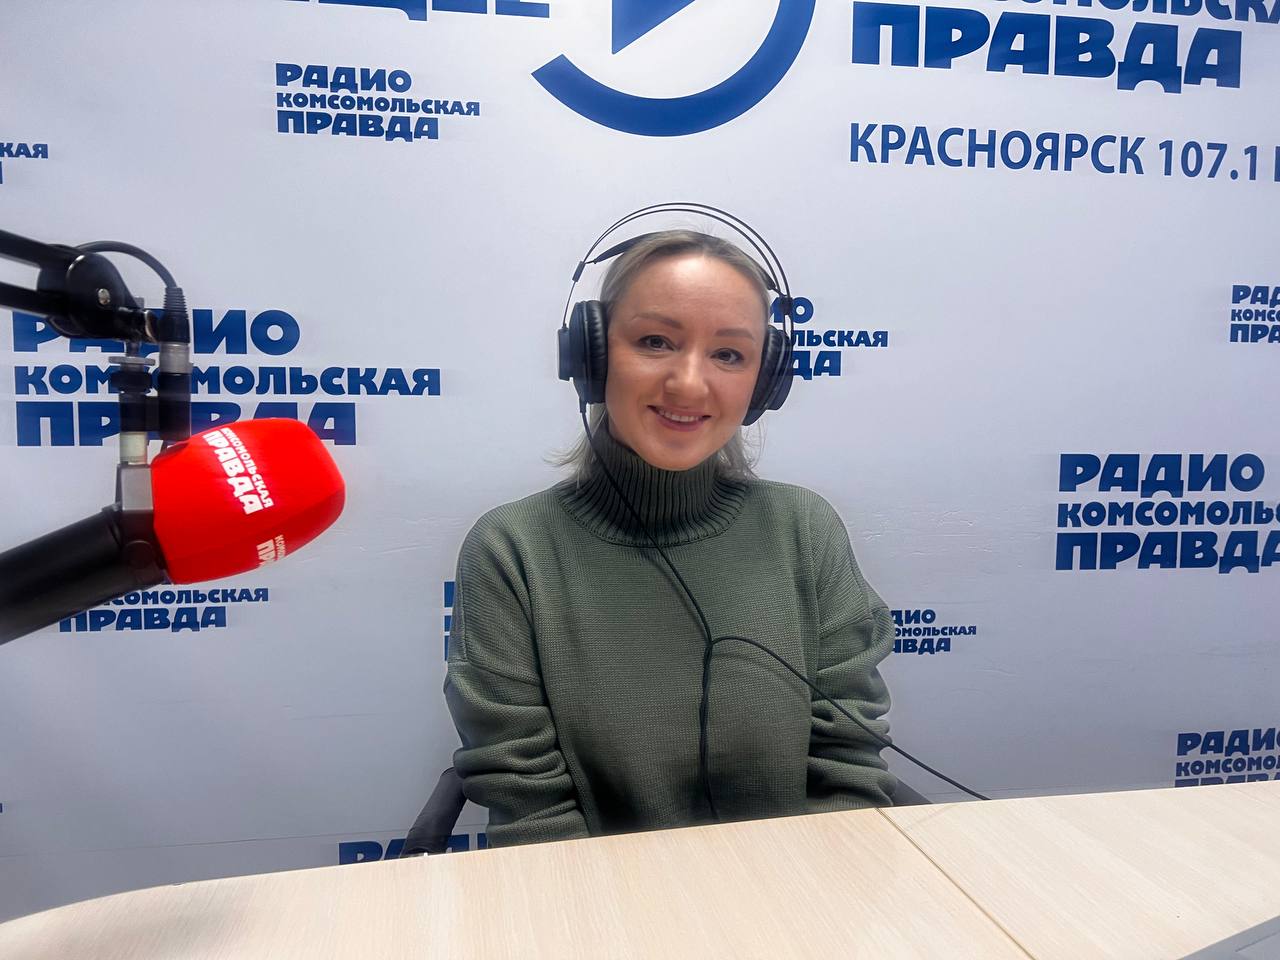 О сохранении репродуктивного здоровья населения в прямом эфире радио "Комсомольская правда"